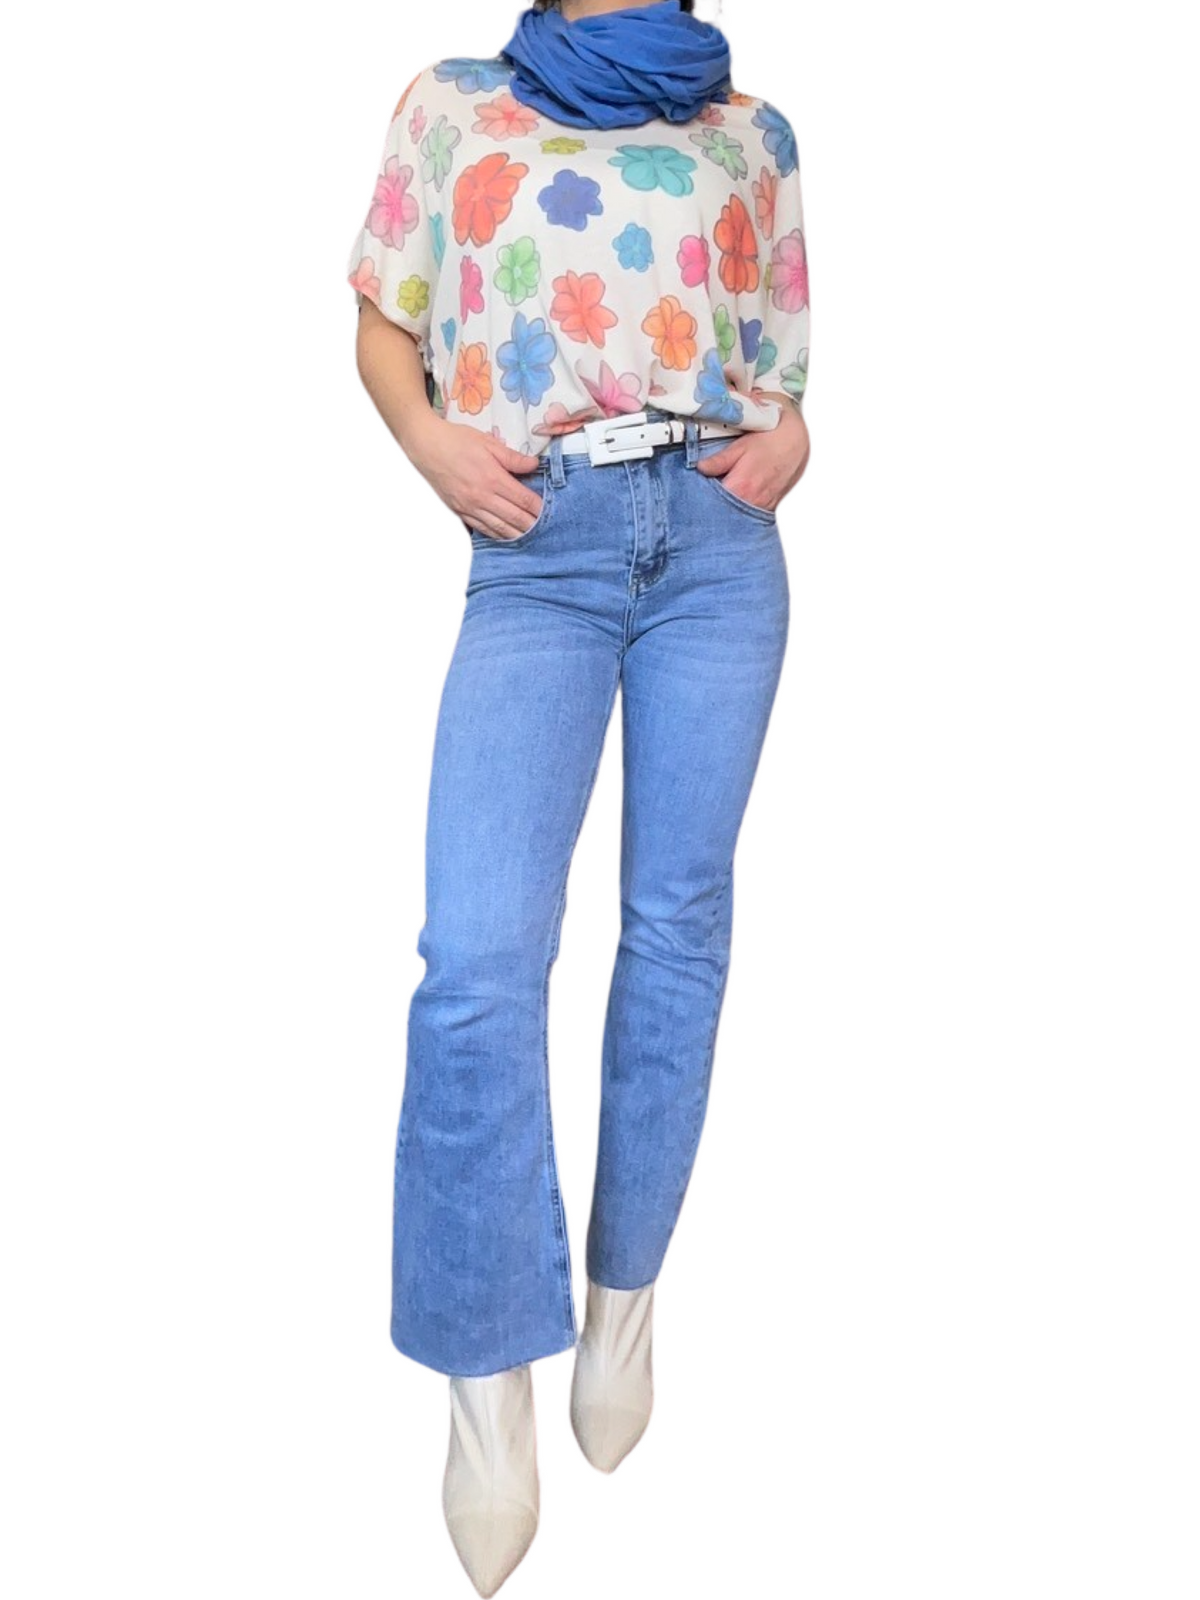 T-shirt blanc pour femme avec imprimé de fleurs multicolores avec foulard, ceinture, jeans et bottes. 